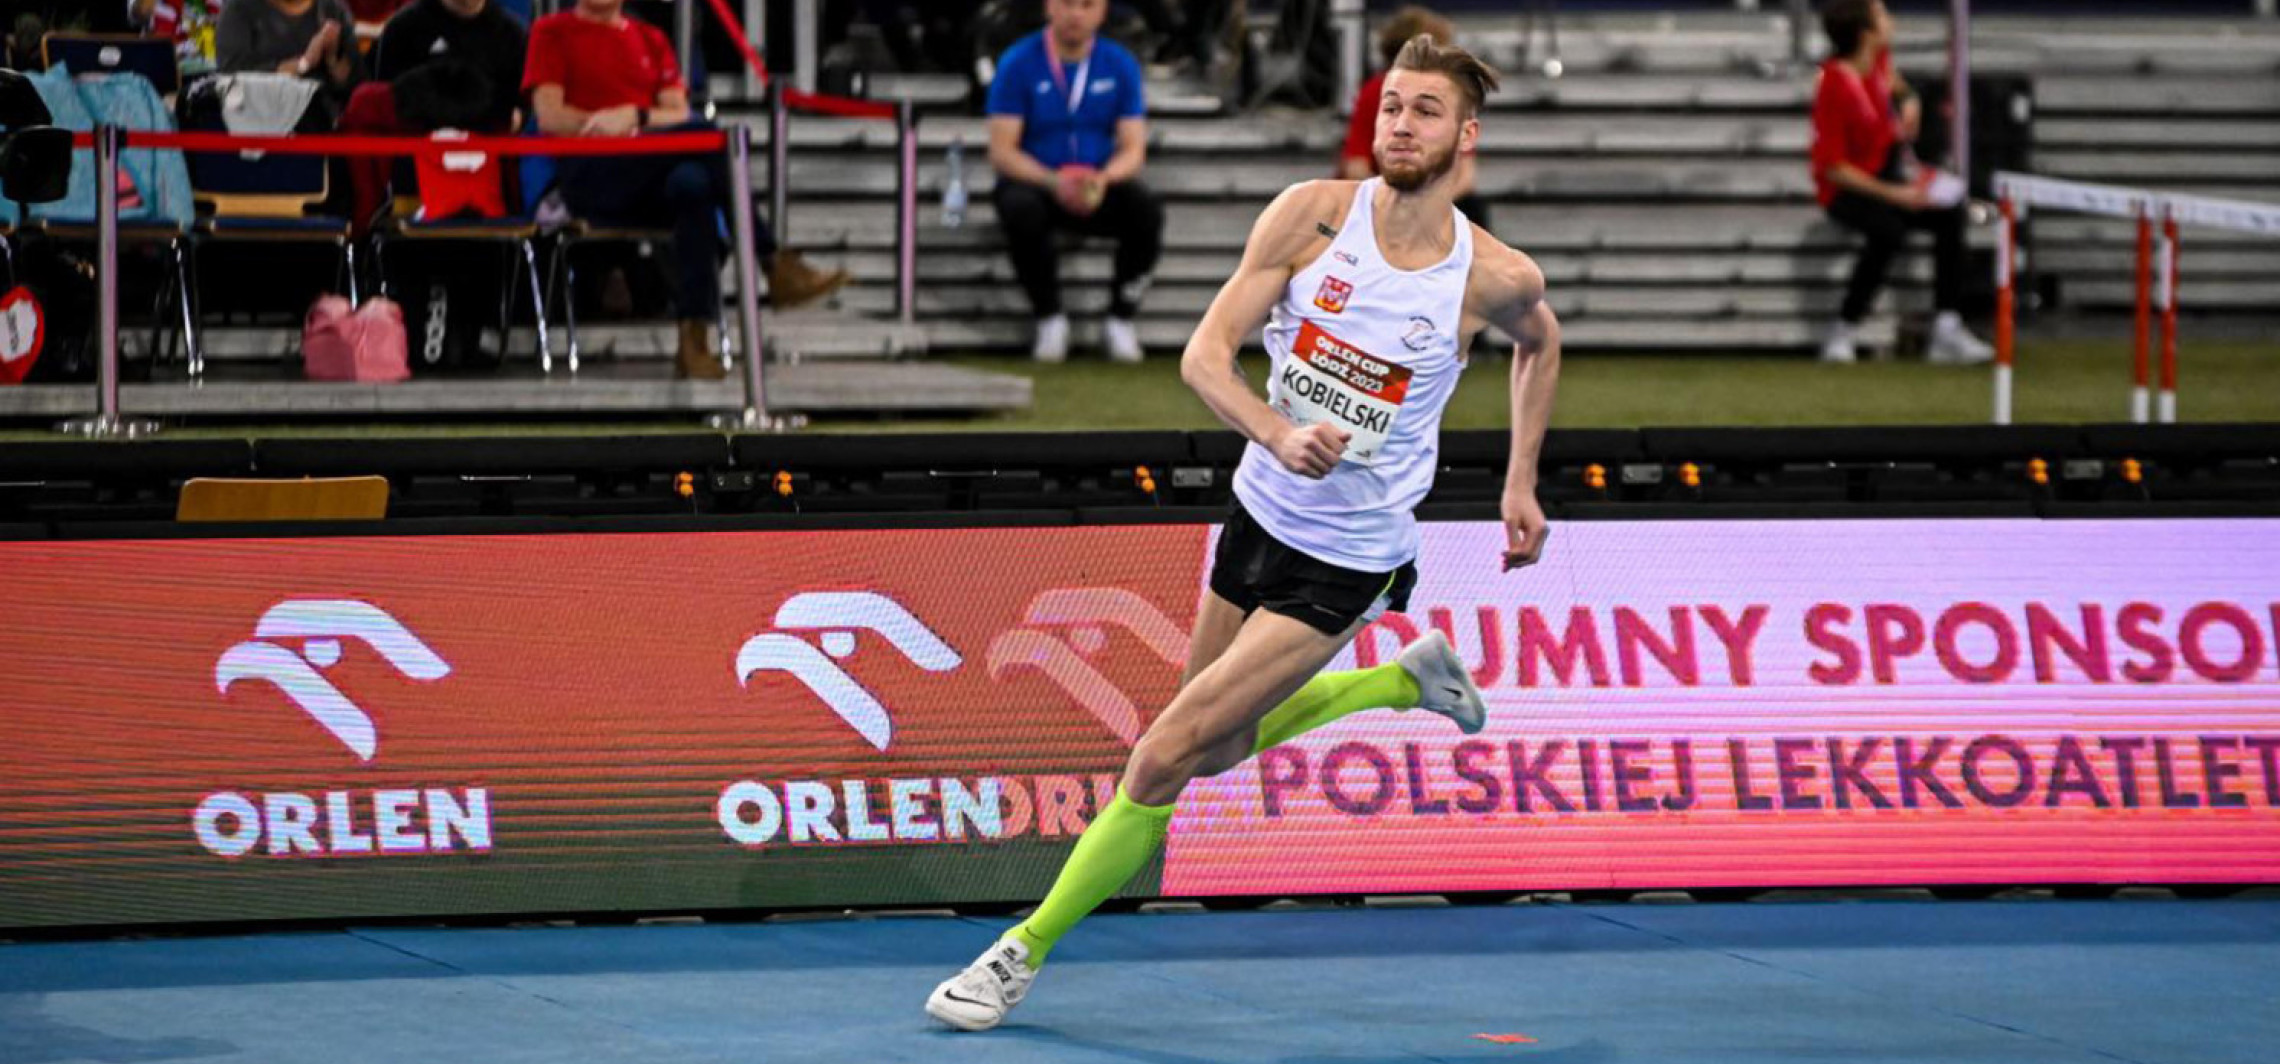 Inowrocław - Kobielski zakwalifikował się do finału skoku wzwyż